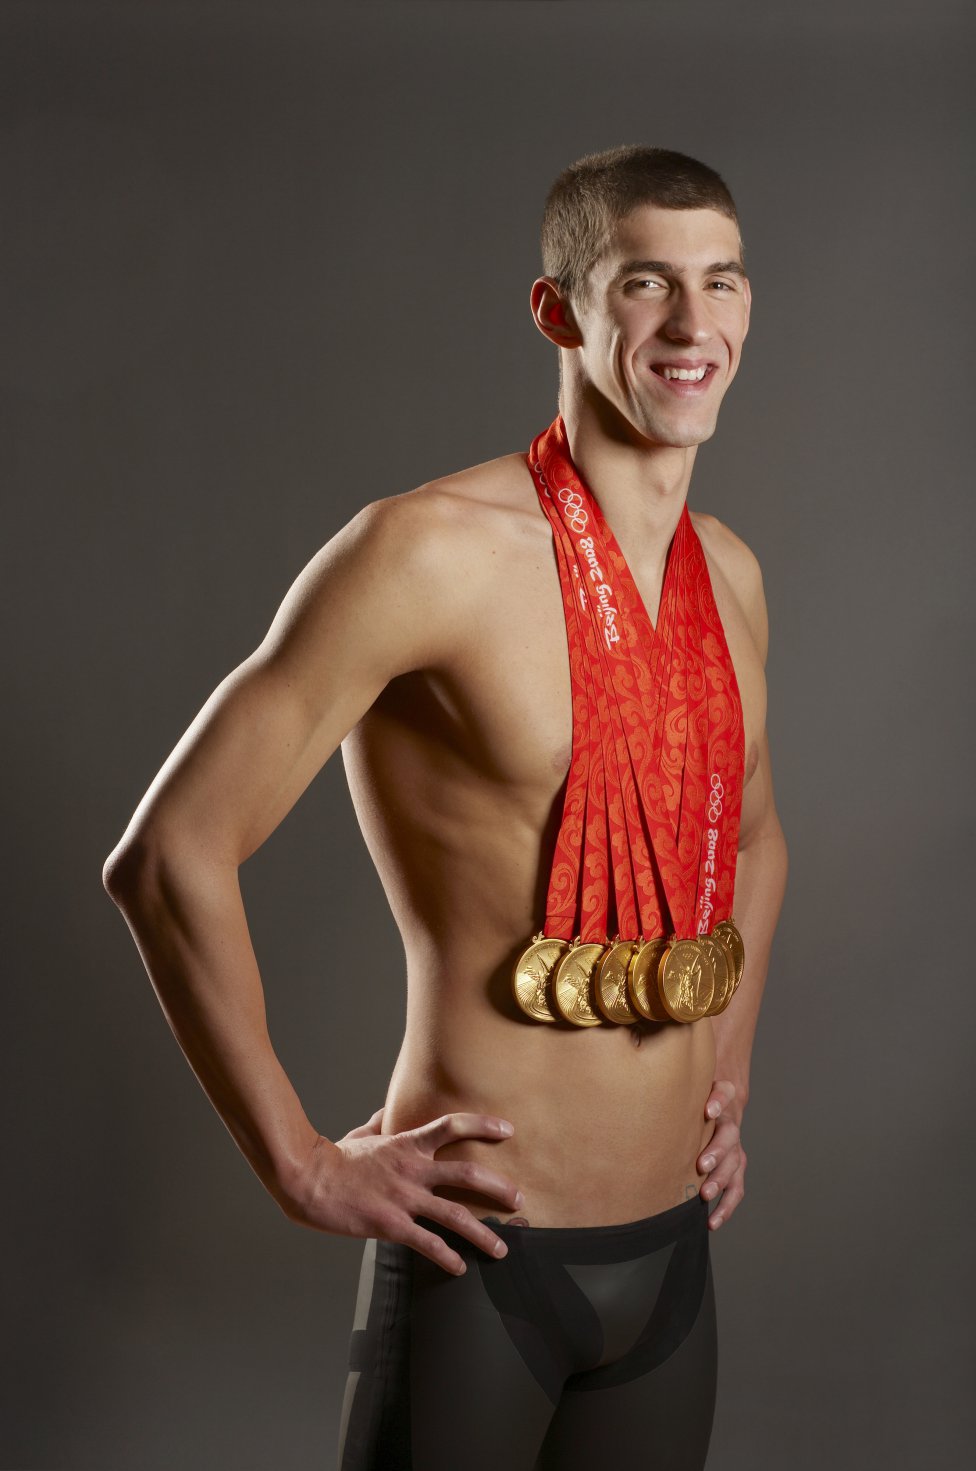 El tiburón de Baltimore tiene el récord de medallas en natación, en una edición y en la historia de los Juegos Olímpicos. 23 oros, 3 platas y 2 bronces.